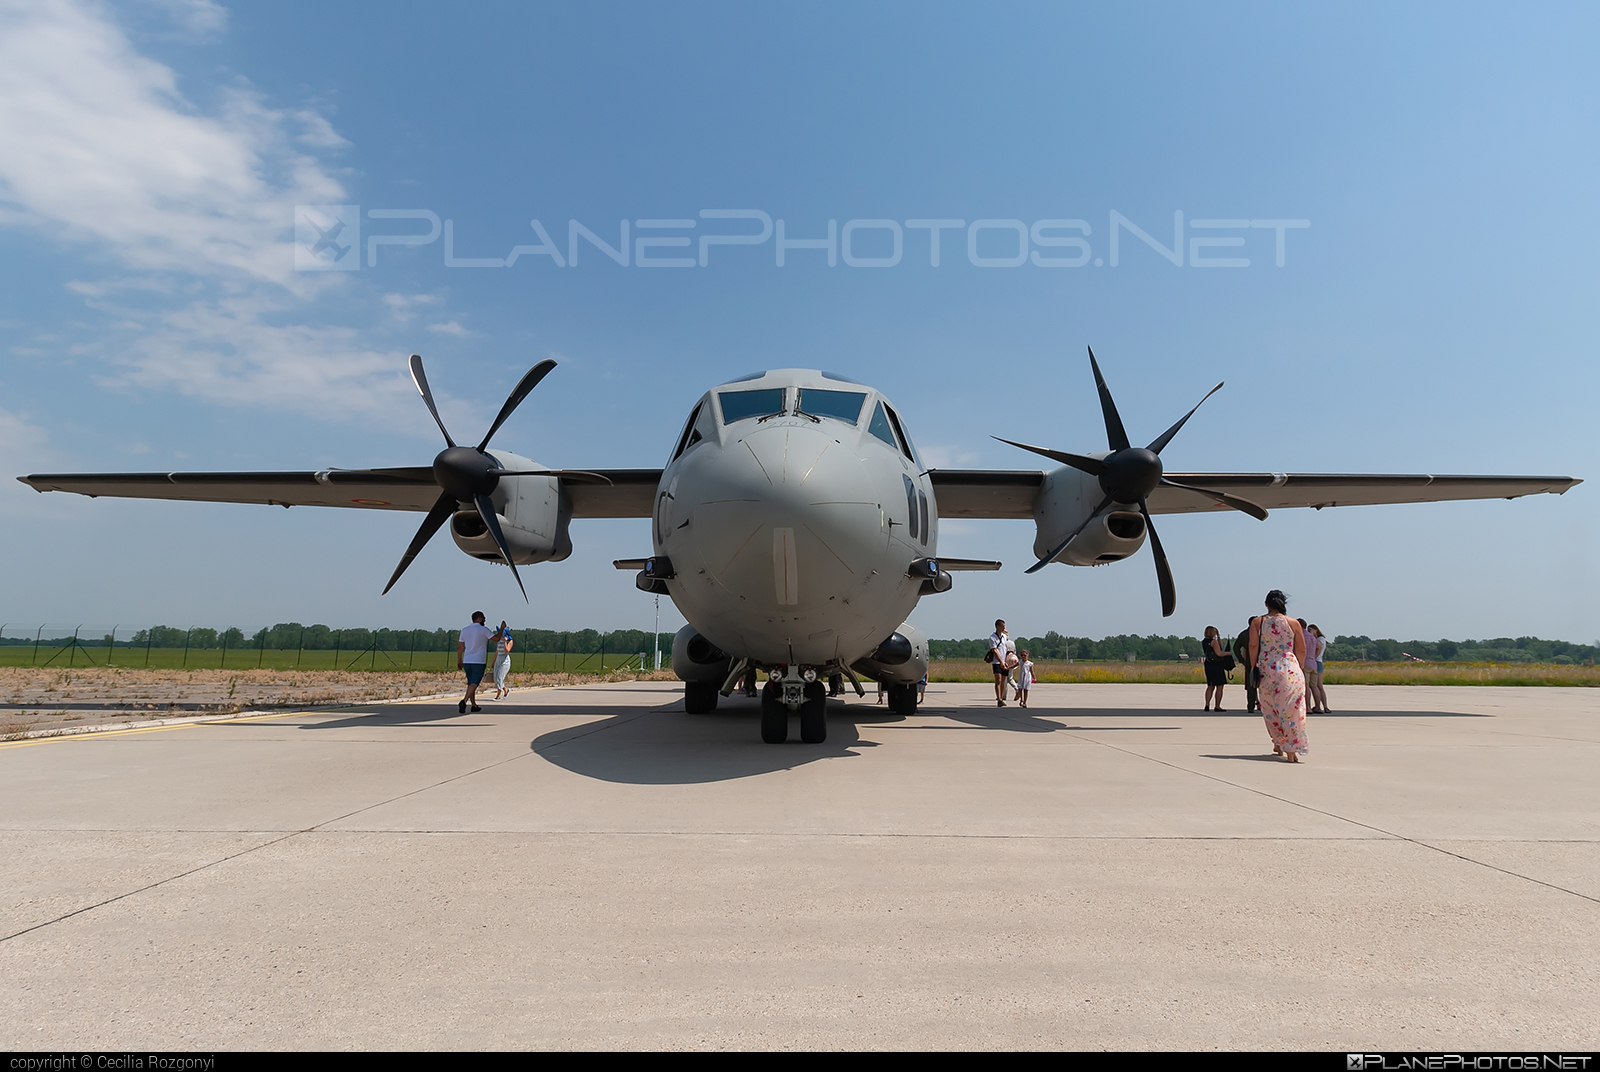 Alenia C-27J Spartan - 2707 operated by Forţele Aeriene Române (Romanian Air Force) #alenia #aleniac27j #aleniac27jspartan #aleniaspartan #c27j #c27jspartan #c27spartan #forteleaerieneromane #romanianairforce